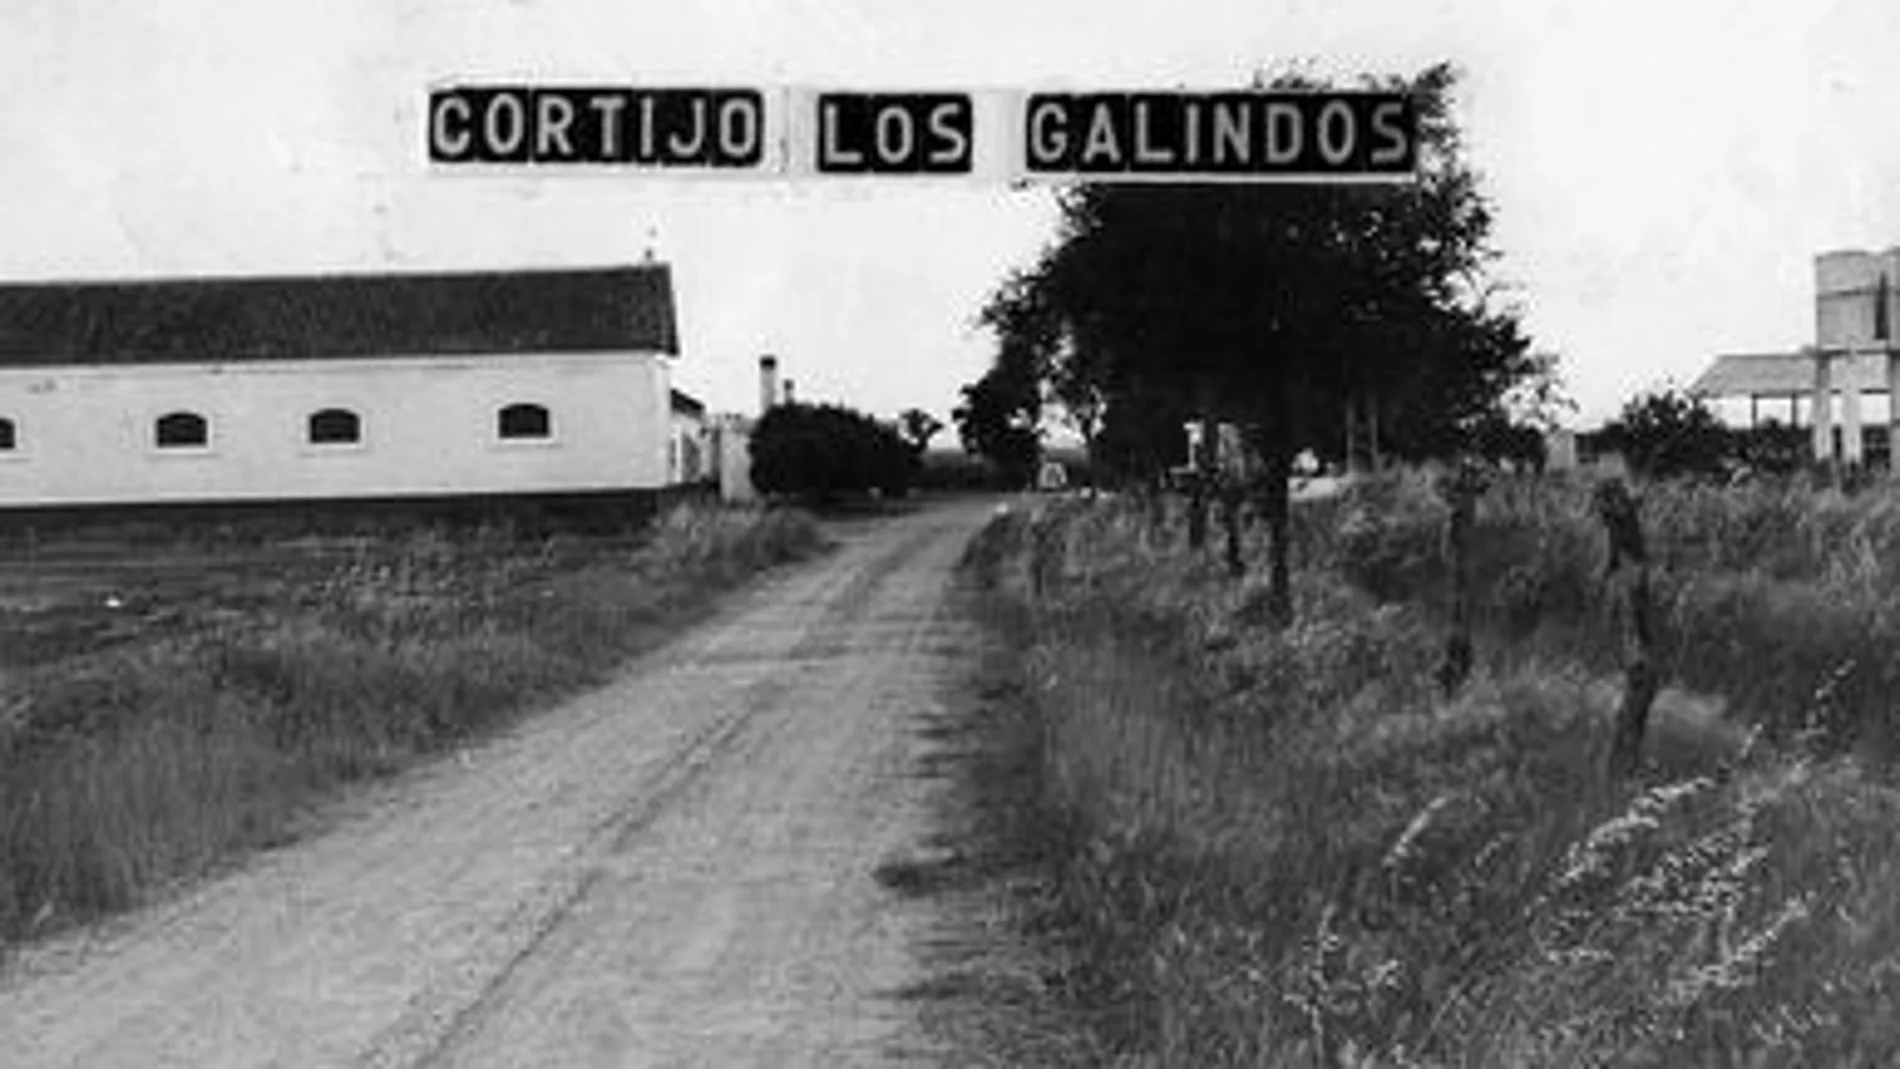 Cortijo de Los Galindos